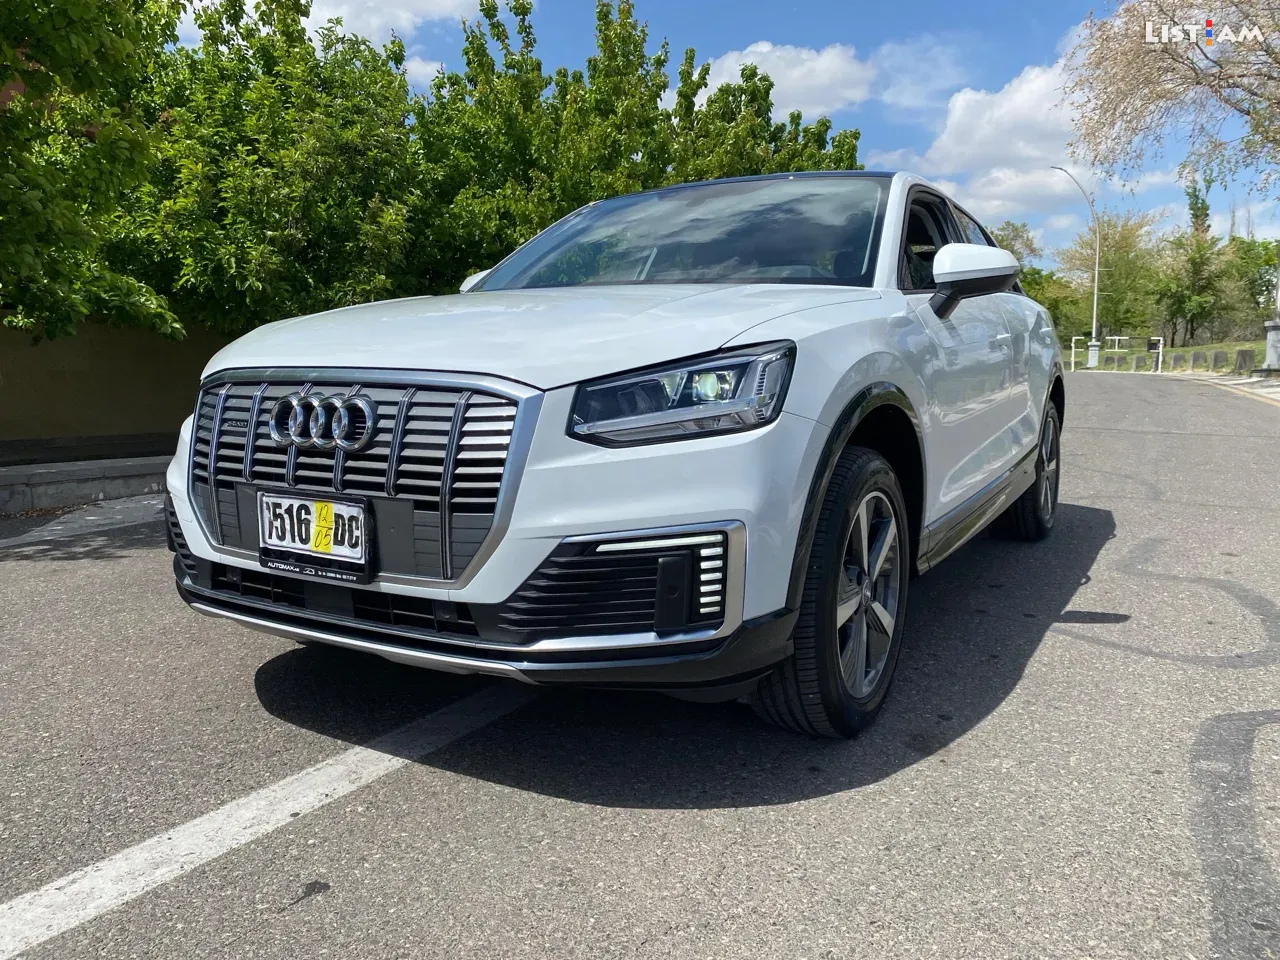 Audi E-tron, էլեկտրական, լիաքարշ, 2021 թ. - Ավտոմեքենաներ - List.am